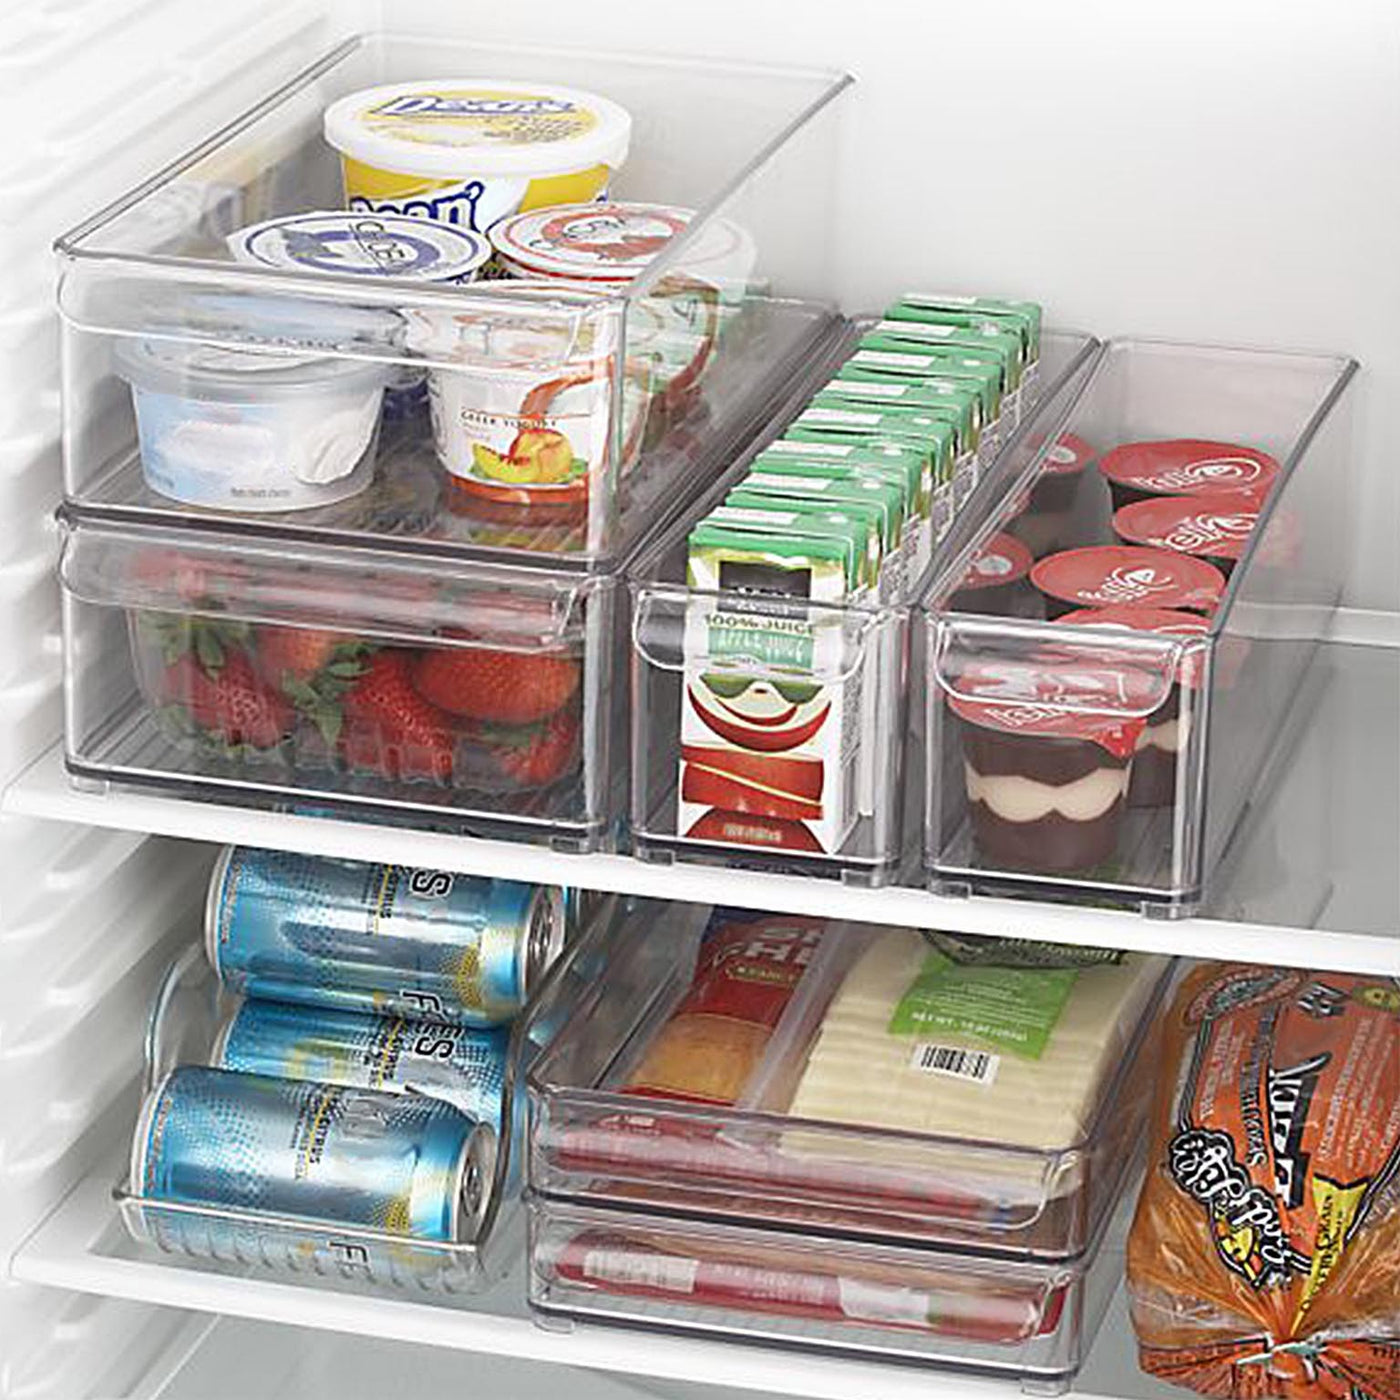 Contenedor Para Refrigerador (Transparente) De Plástico